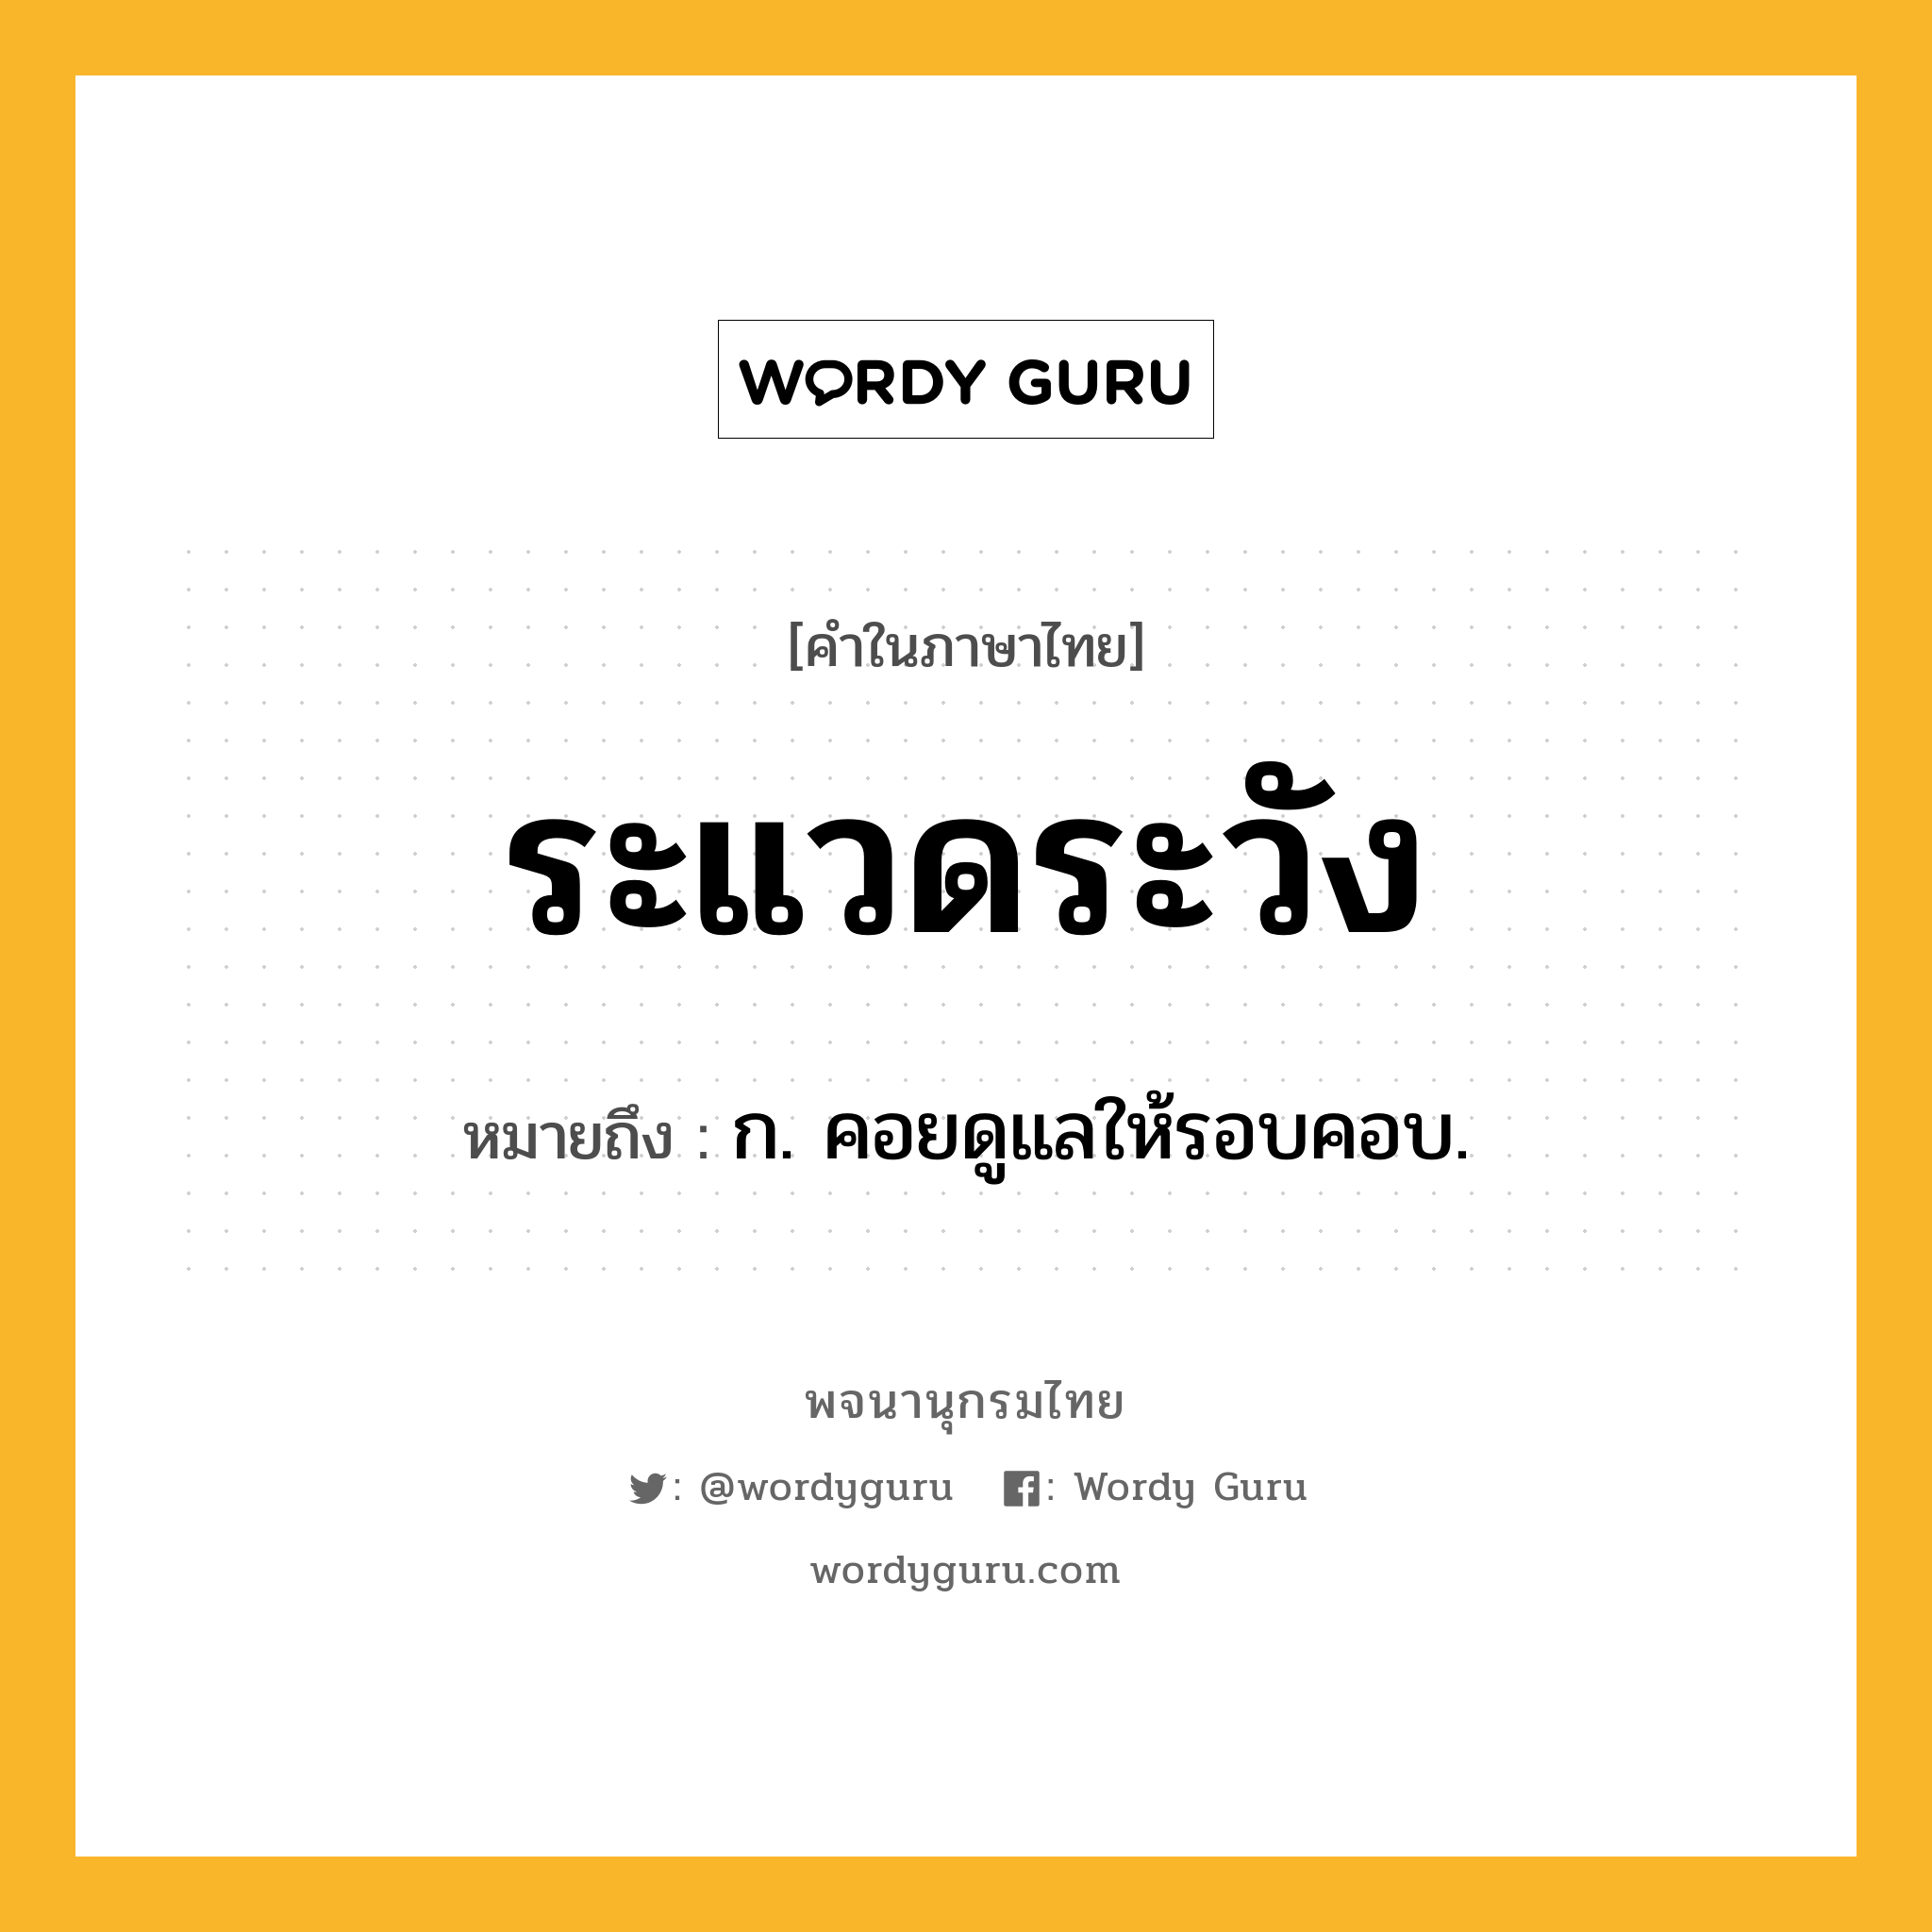 ระแวดระวัง หมายถึงอะไร?, คำในภาษาไทย ระแวดระวัง หมายถึง ก. คอยดูแลให้รอบคอบ.